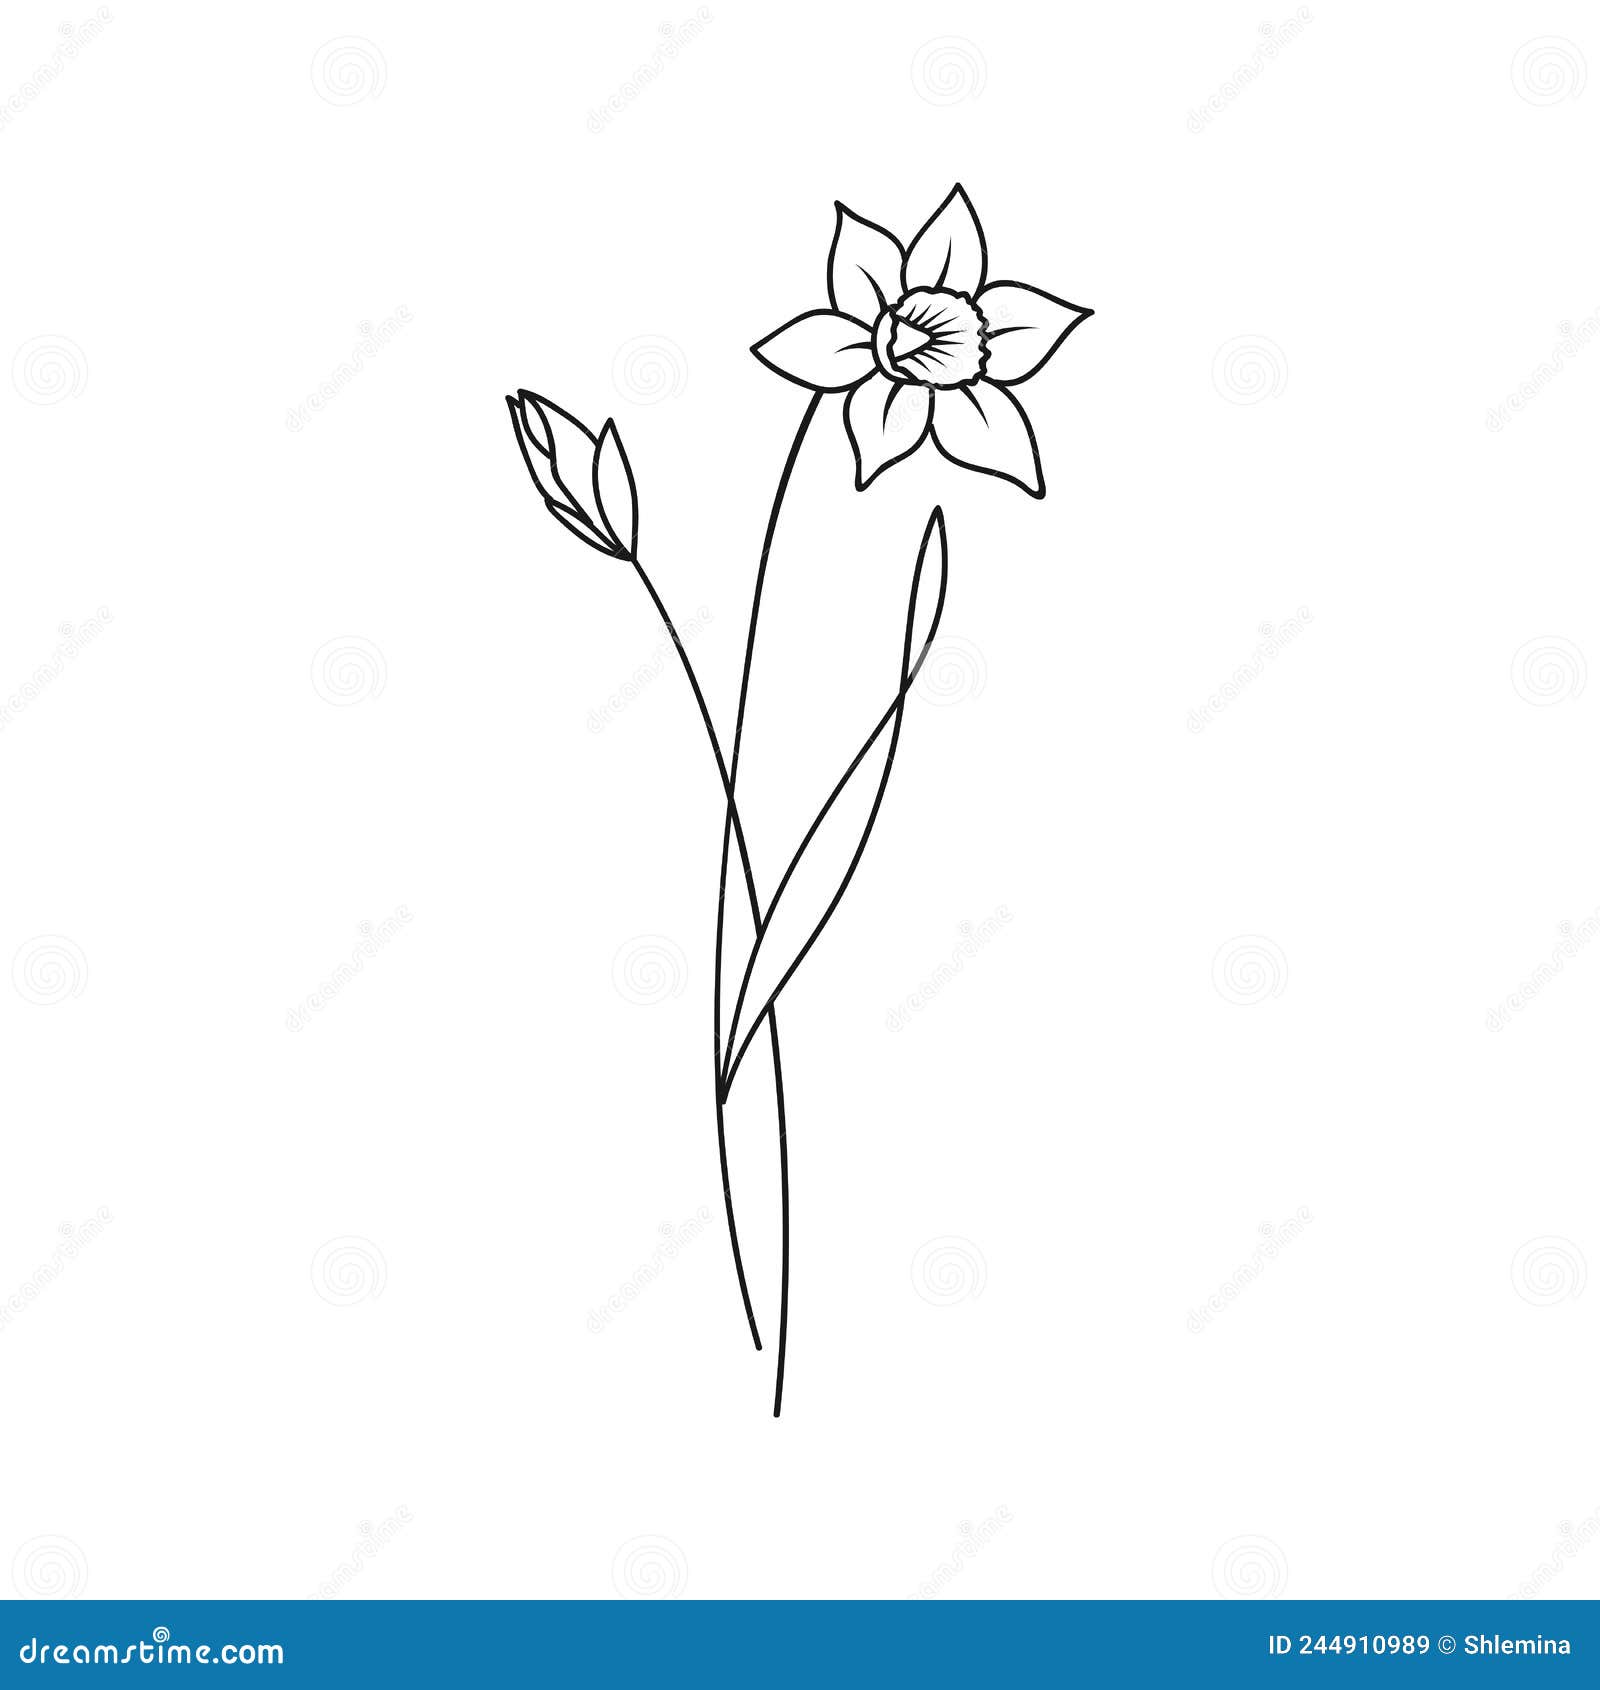 56 December Birth Flower Tattoo Ideas To Idolize In 2023